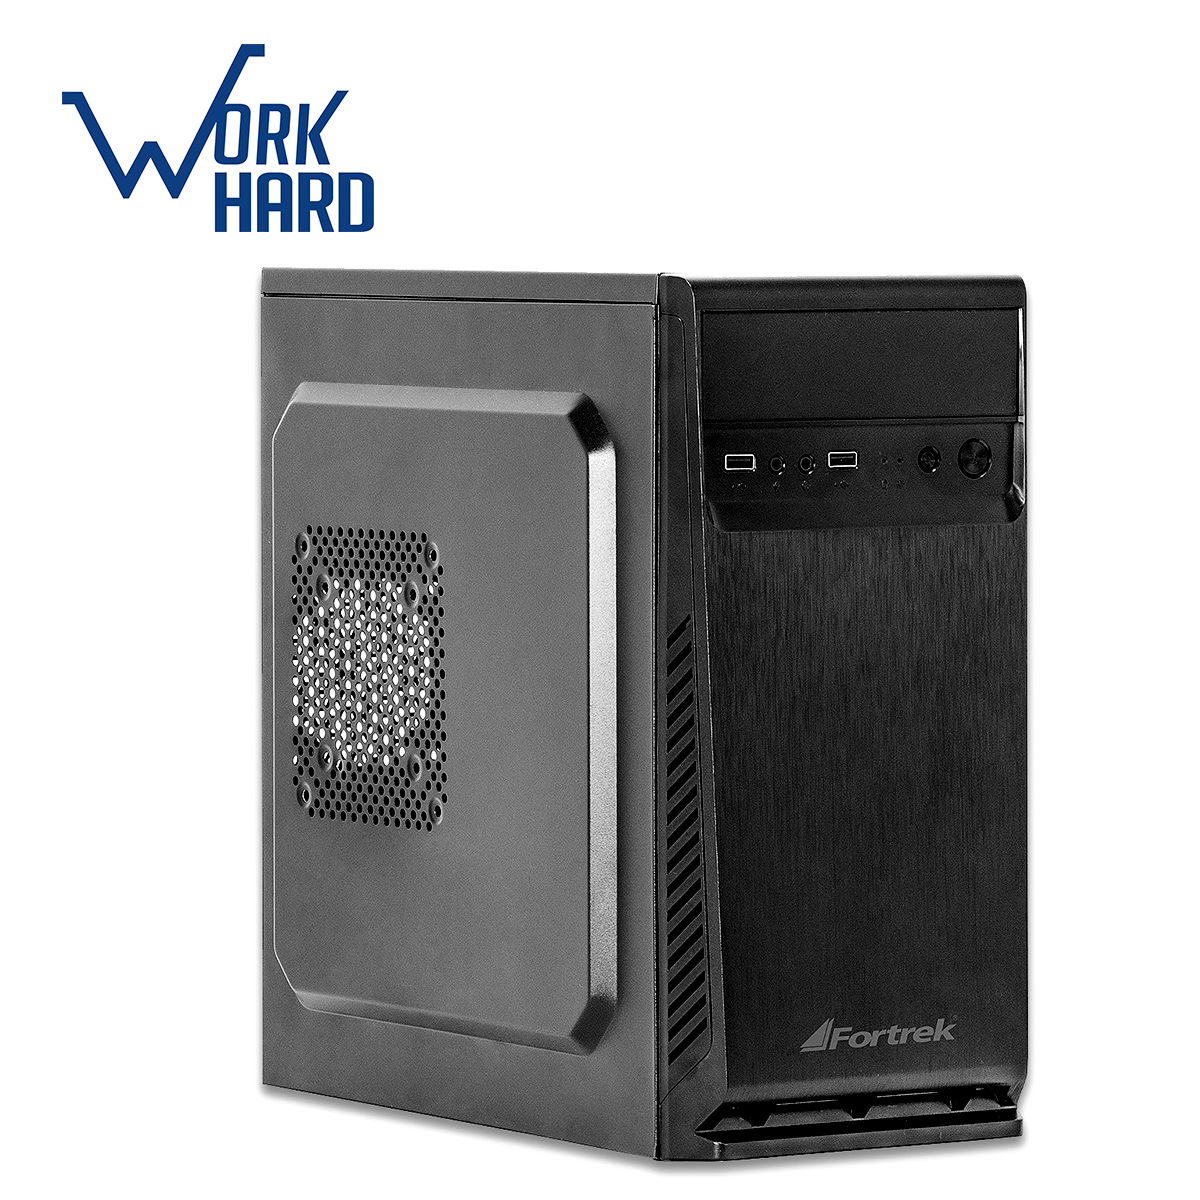 Computador Bits WorkHard - AMD FX-4300 Quad Core, 4GB, SSD 120GB, FreeDos - 2 Anos de garantia